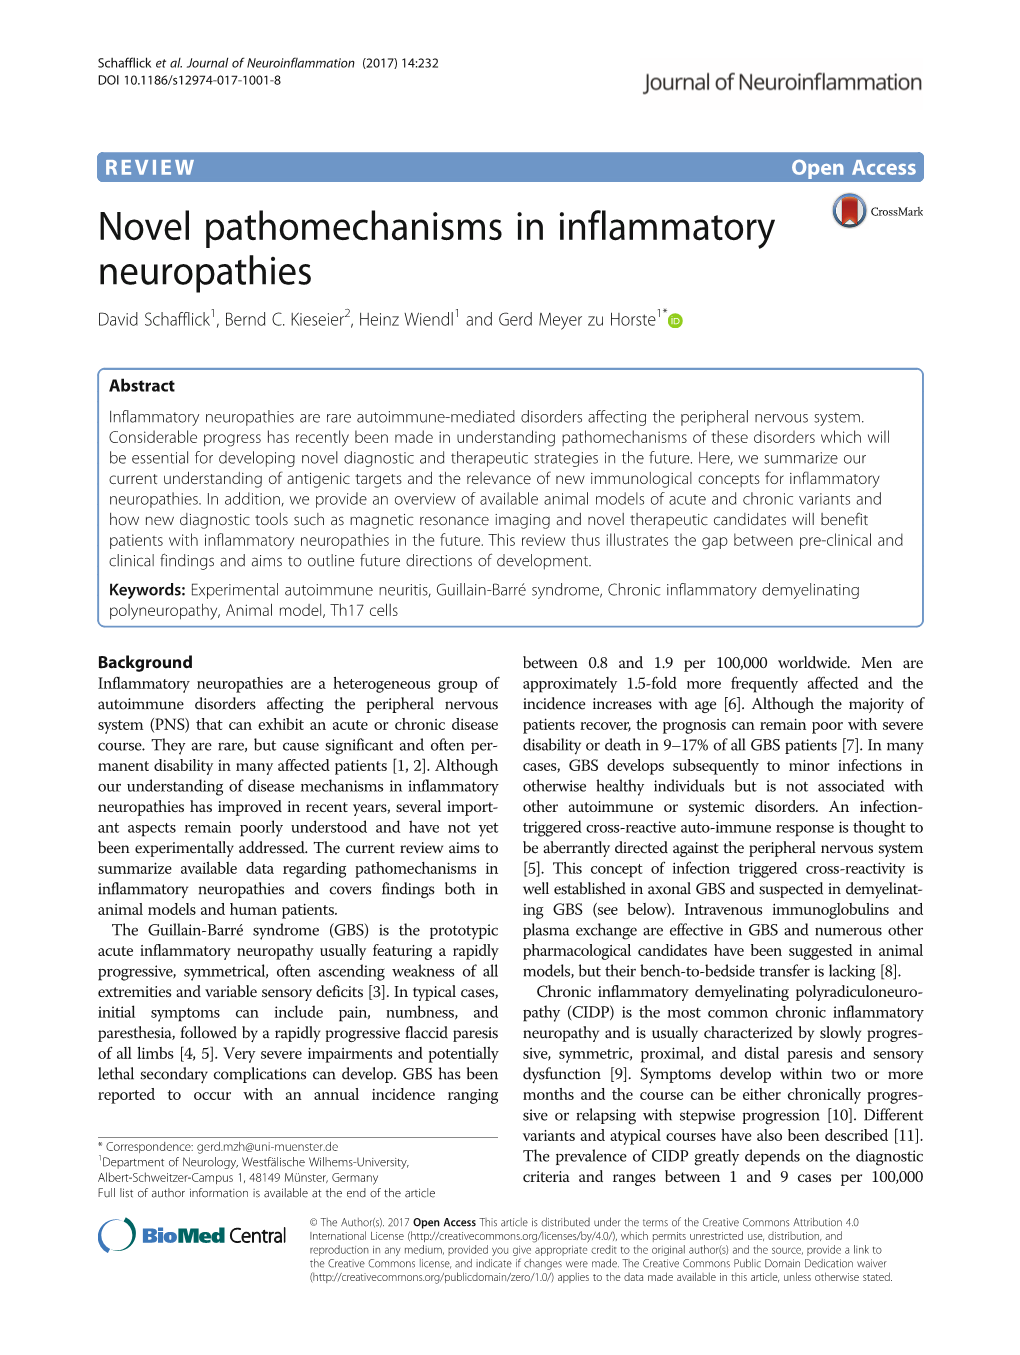 Novel Pathomechanisms in Inflammatory Neuropathies David Schafflick1, Bernd C